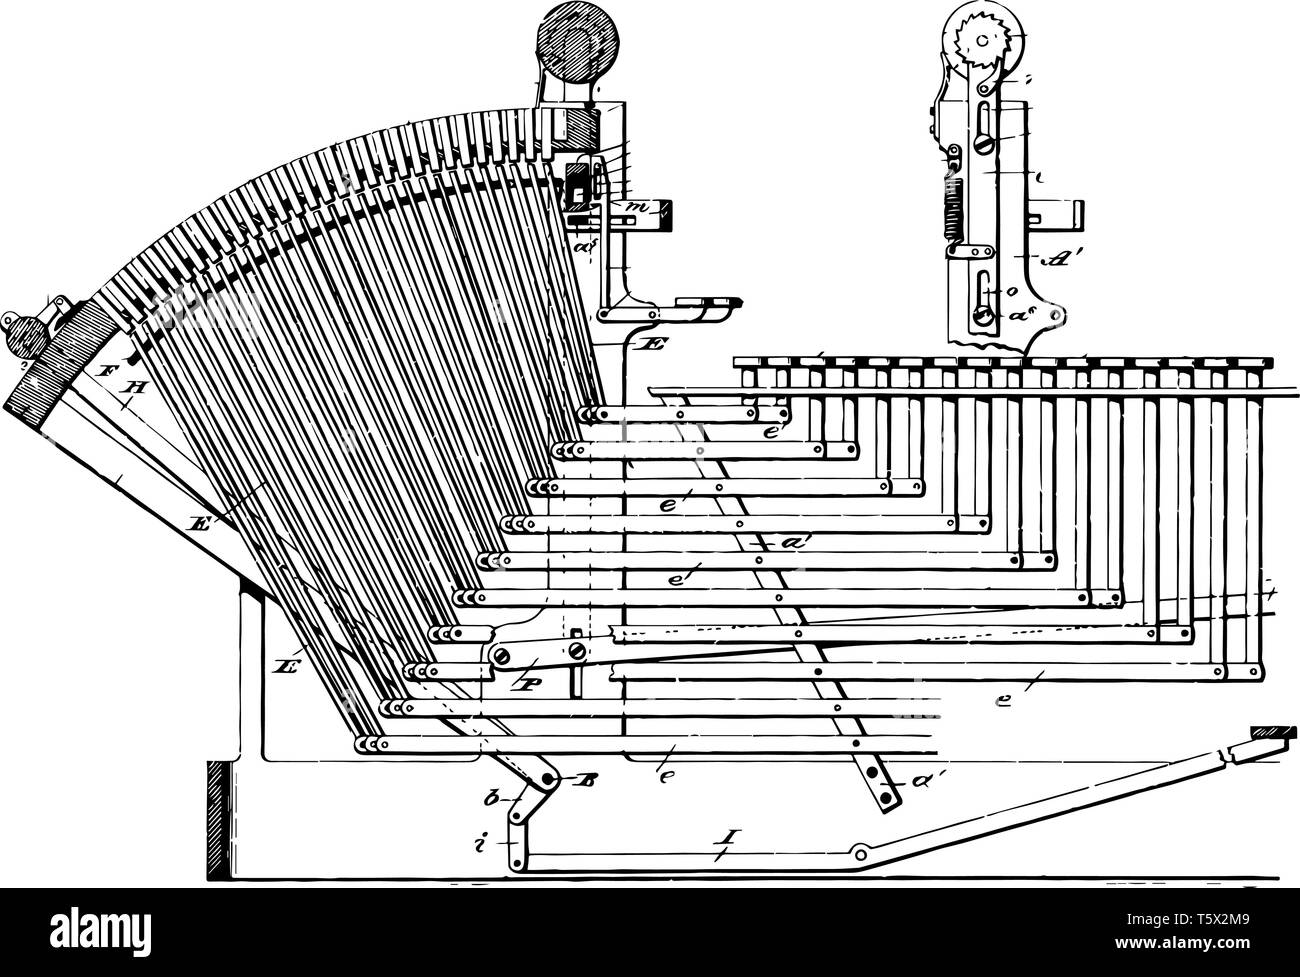 Diese Abbildung stellt die Linotype Maschine ist eine Linie, die gießmaschine in Drucken vintage Strichzeichnung oder Gravur Abbildung verwendet. Stock Vektor